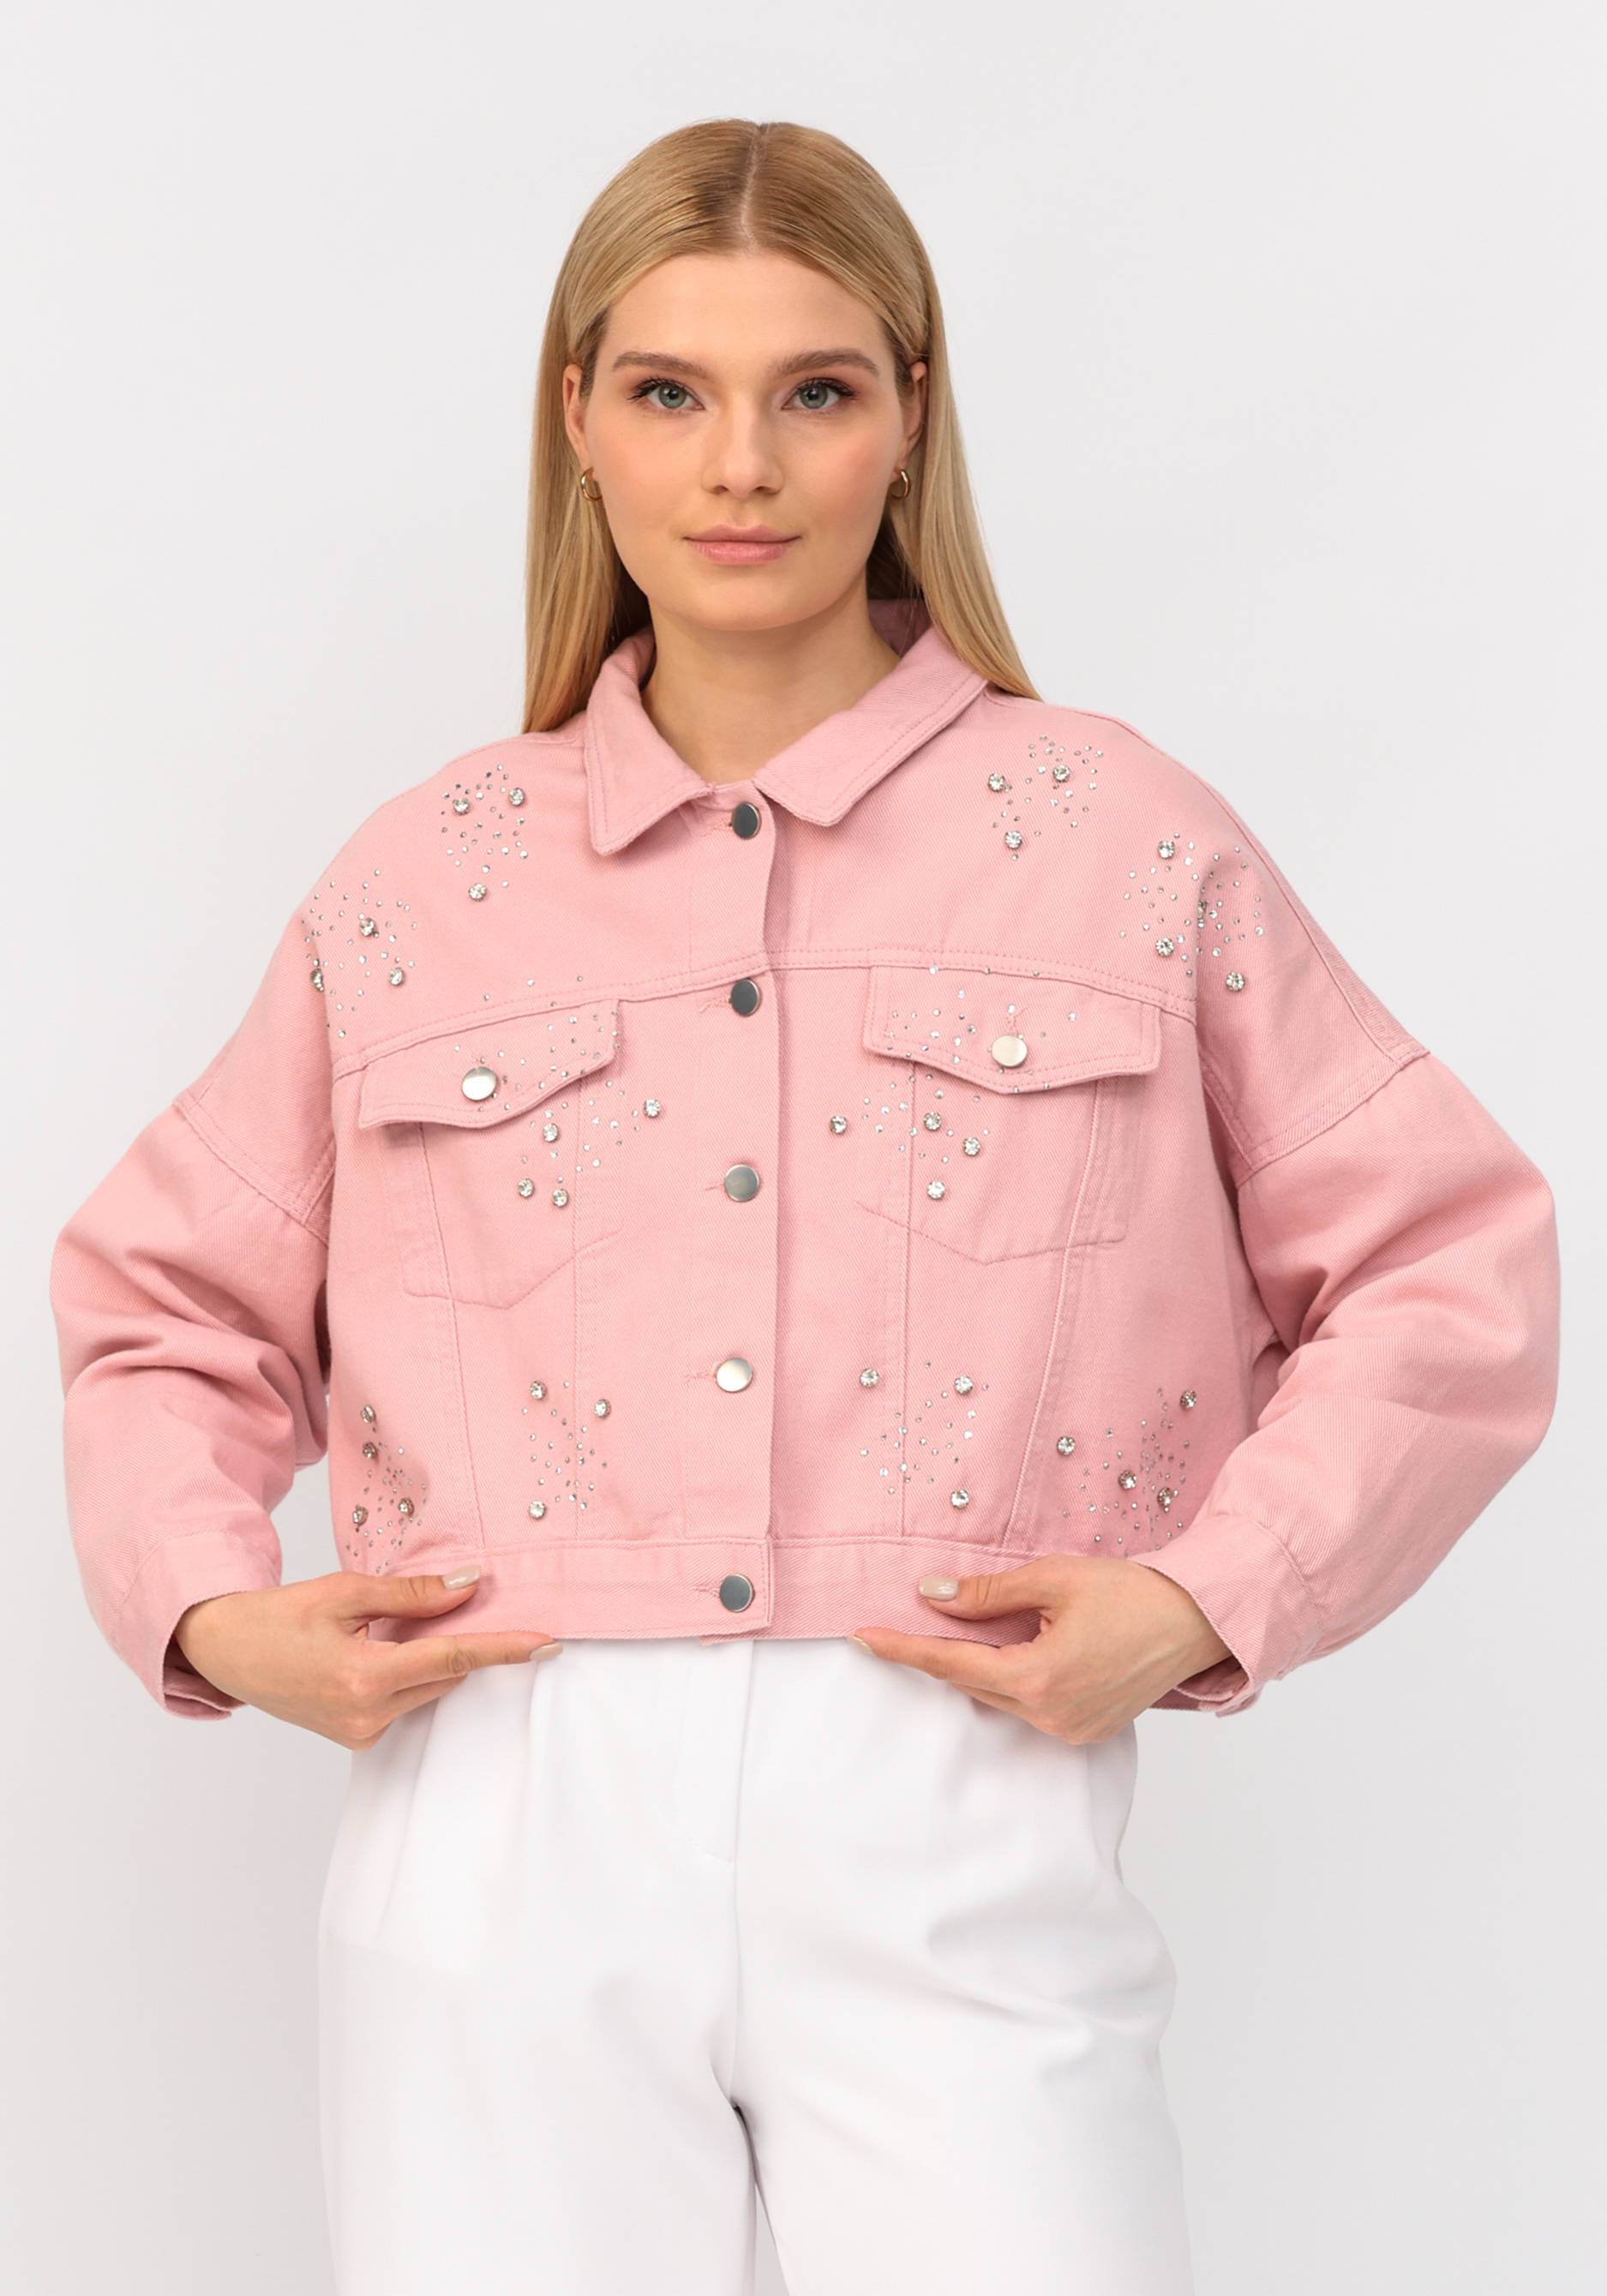 Джинсовая куртка со стразами No name, размер 52-54, цвет розовый - фото 6